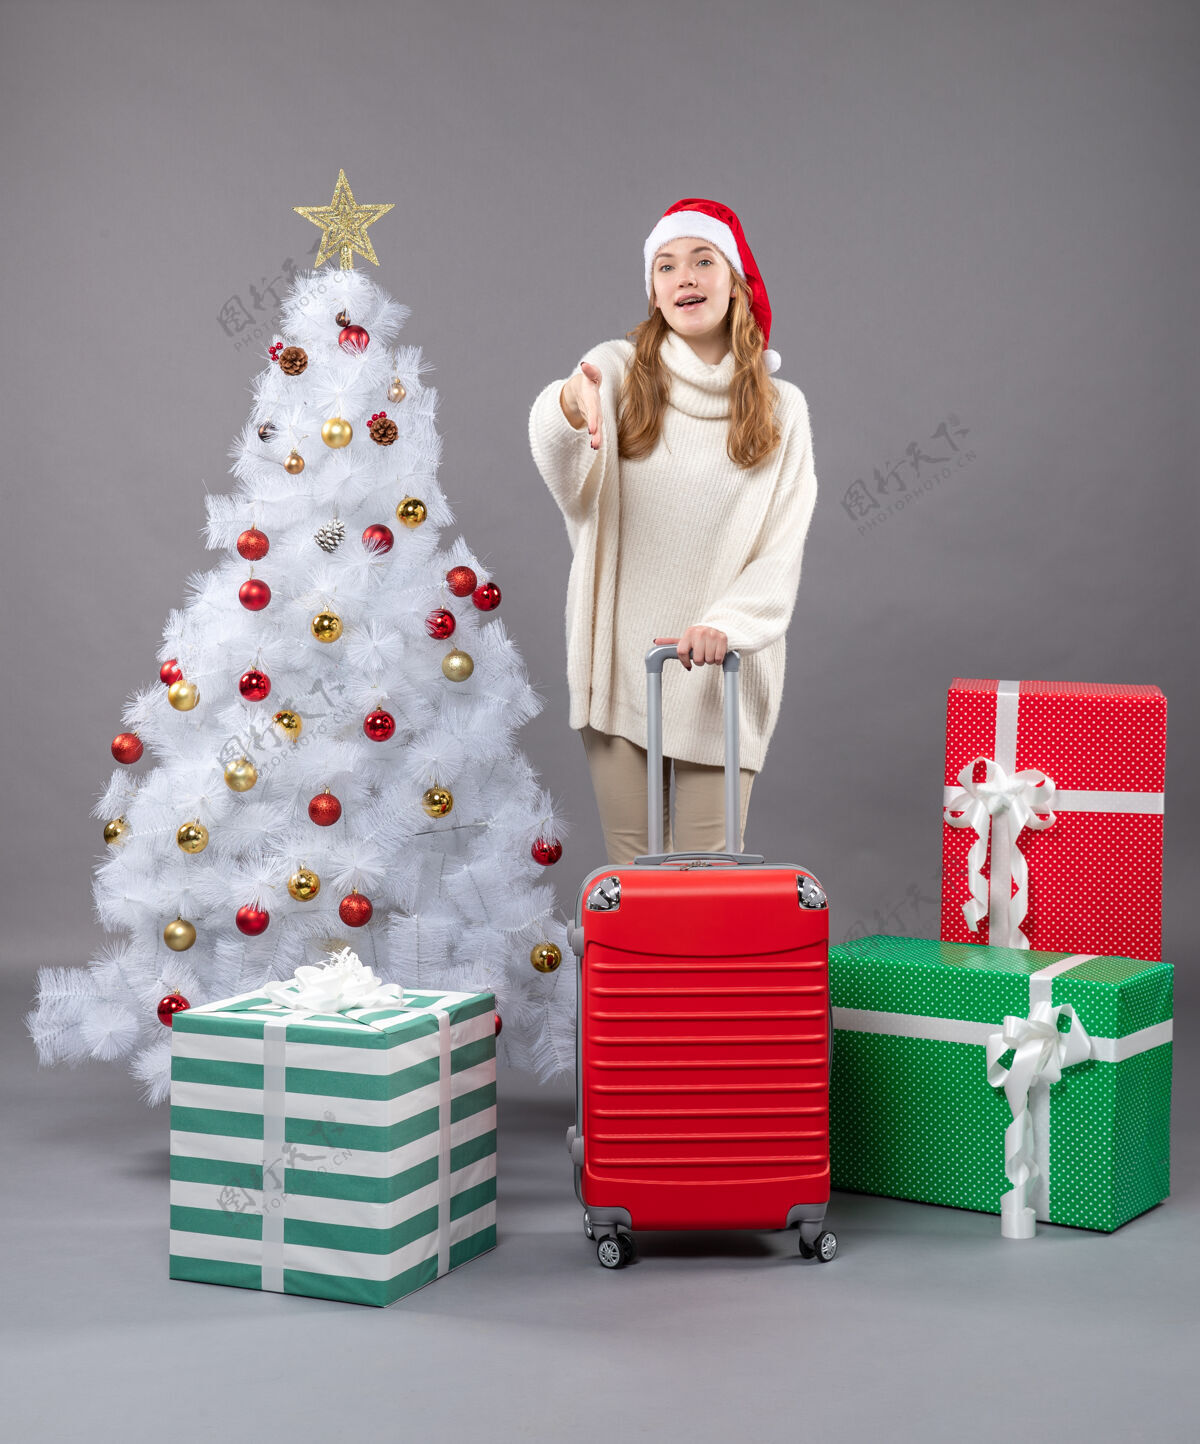 旅行前视图满意的年轻女孩戴着圣诞帽站在圣诞树和礼物附近站立年轻帽子